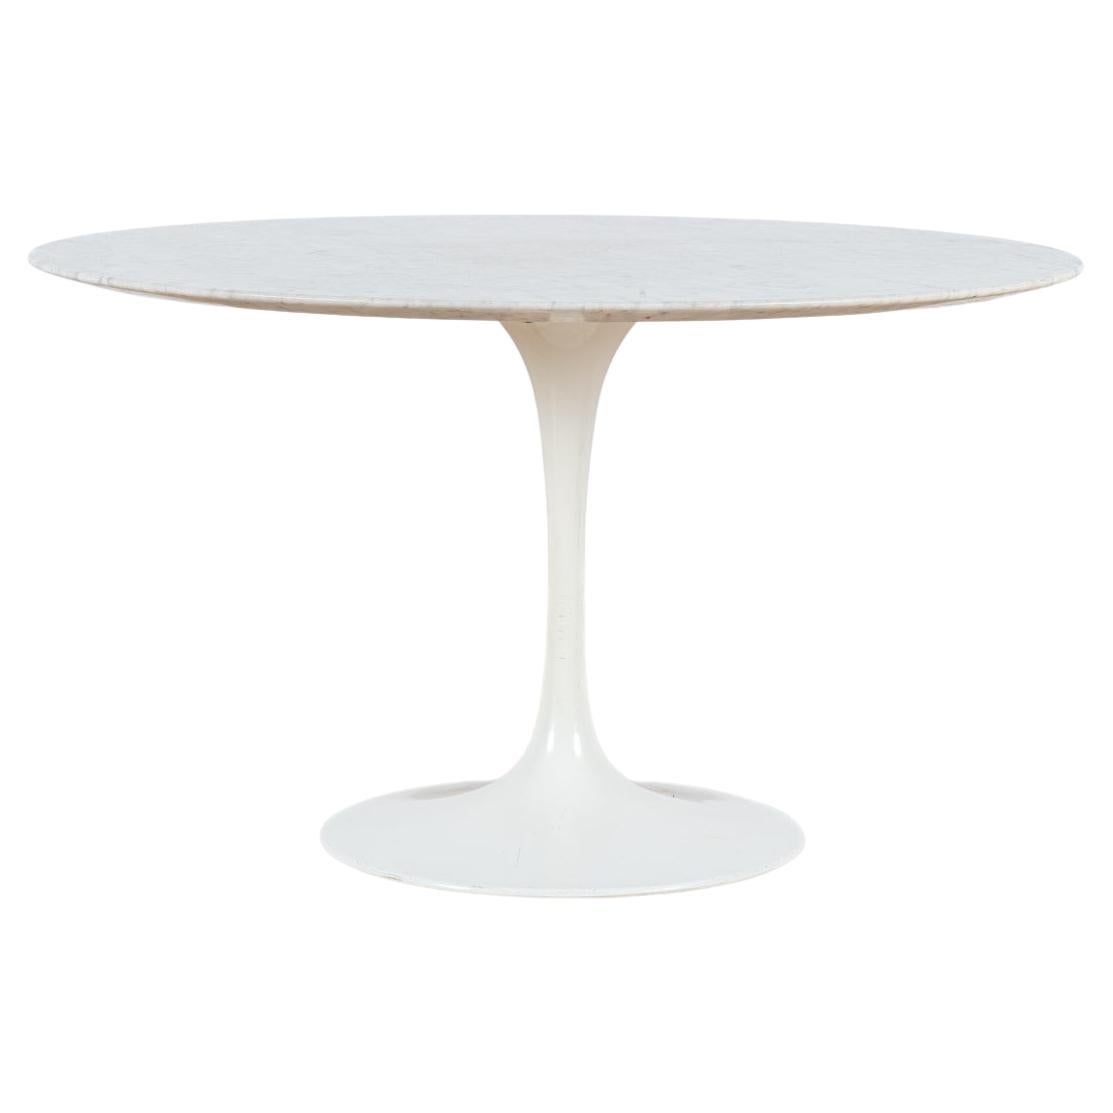 Table Basse Tulipe Eero Saarinen, Knoll International at 1stDibs